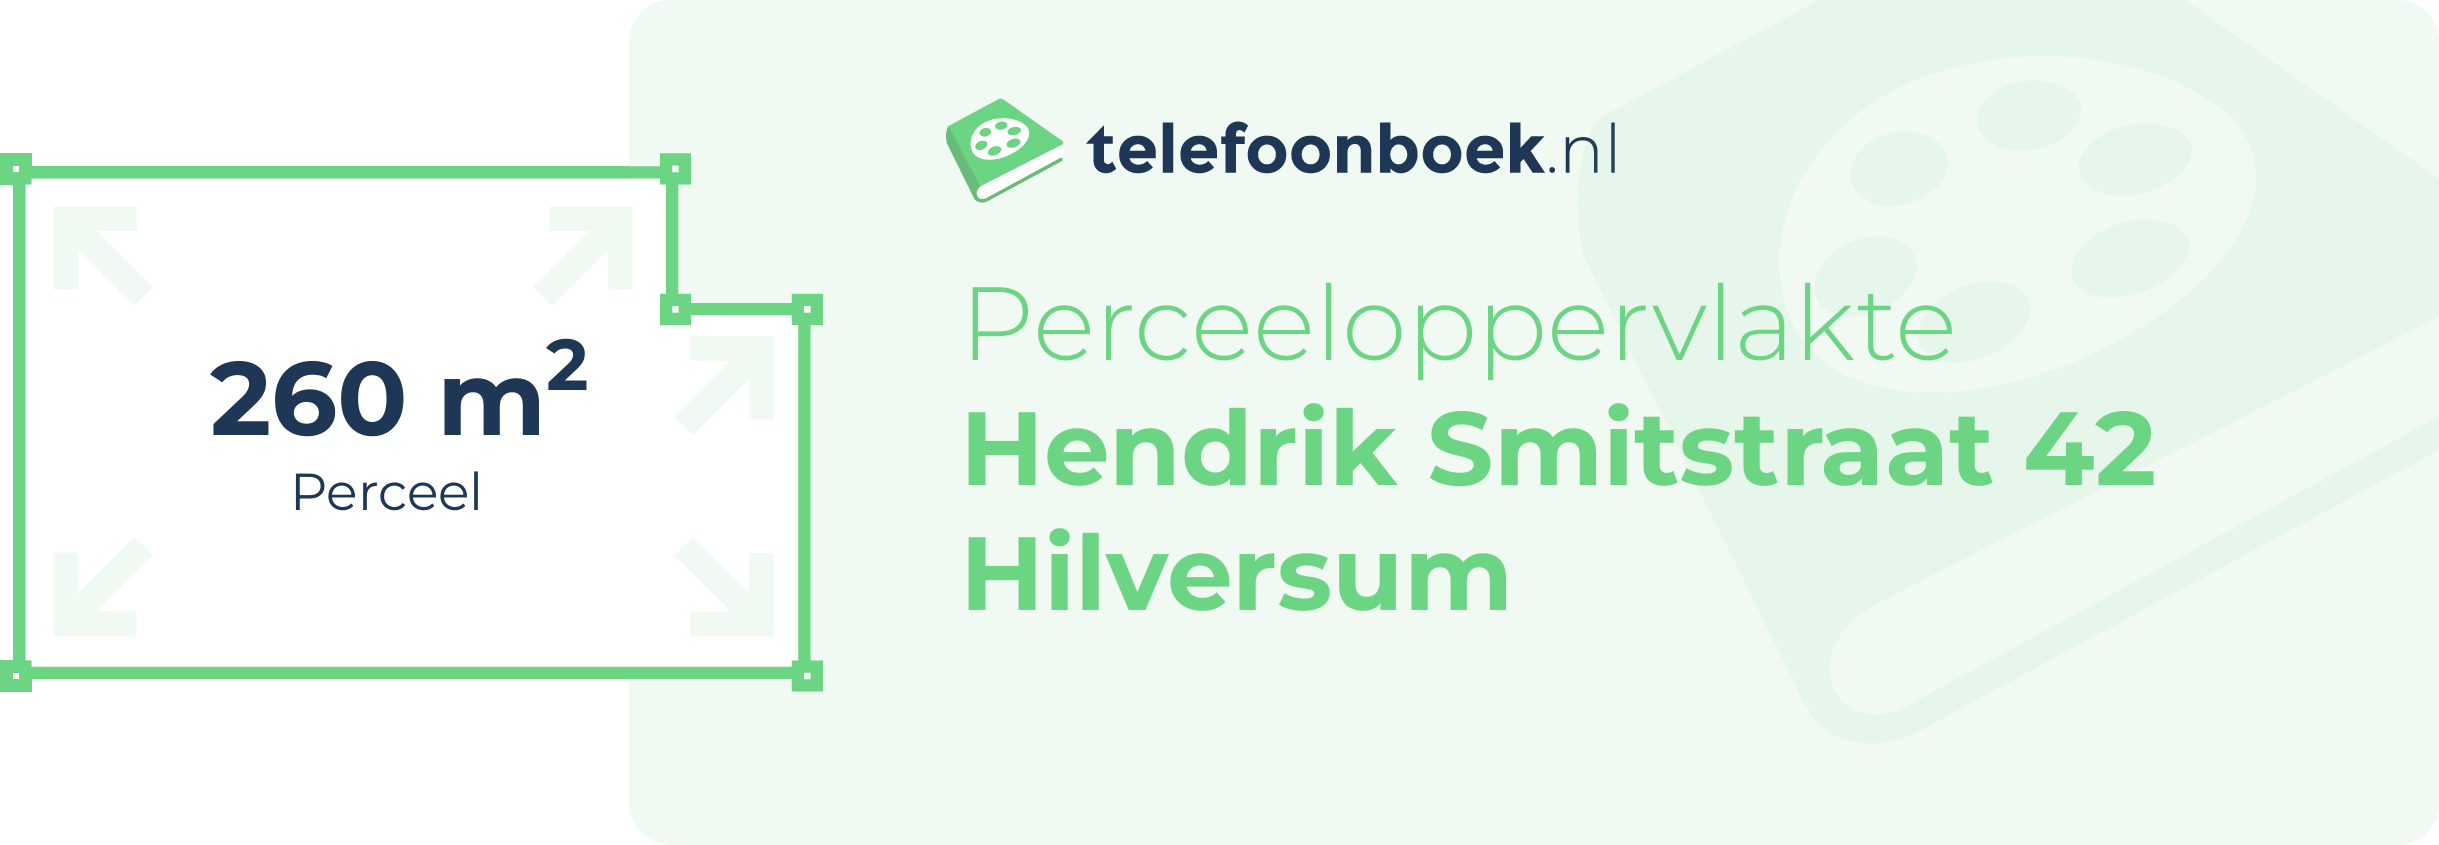 Perceeloppervlakte Hendrik Smitstraat 42 Hilversum